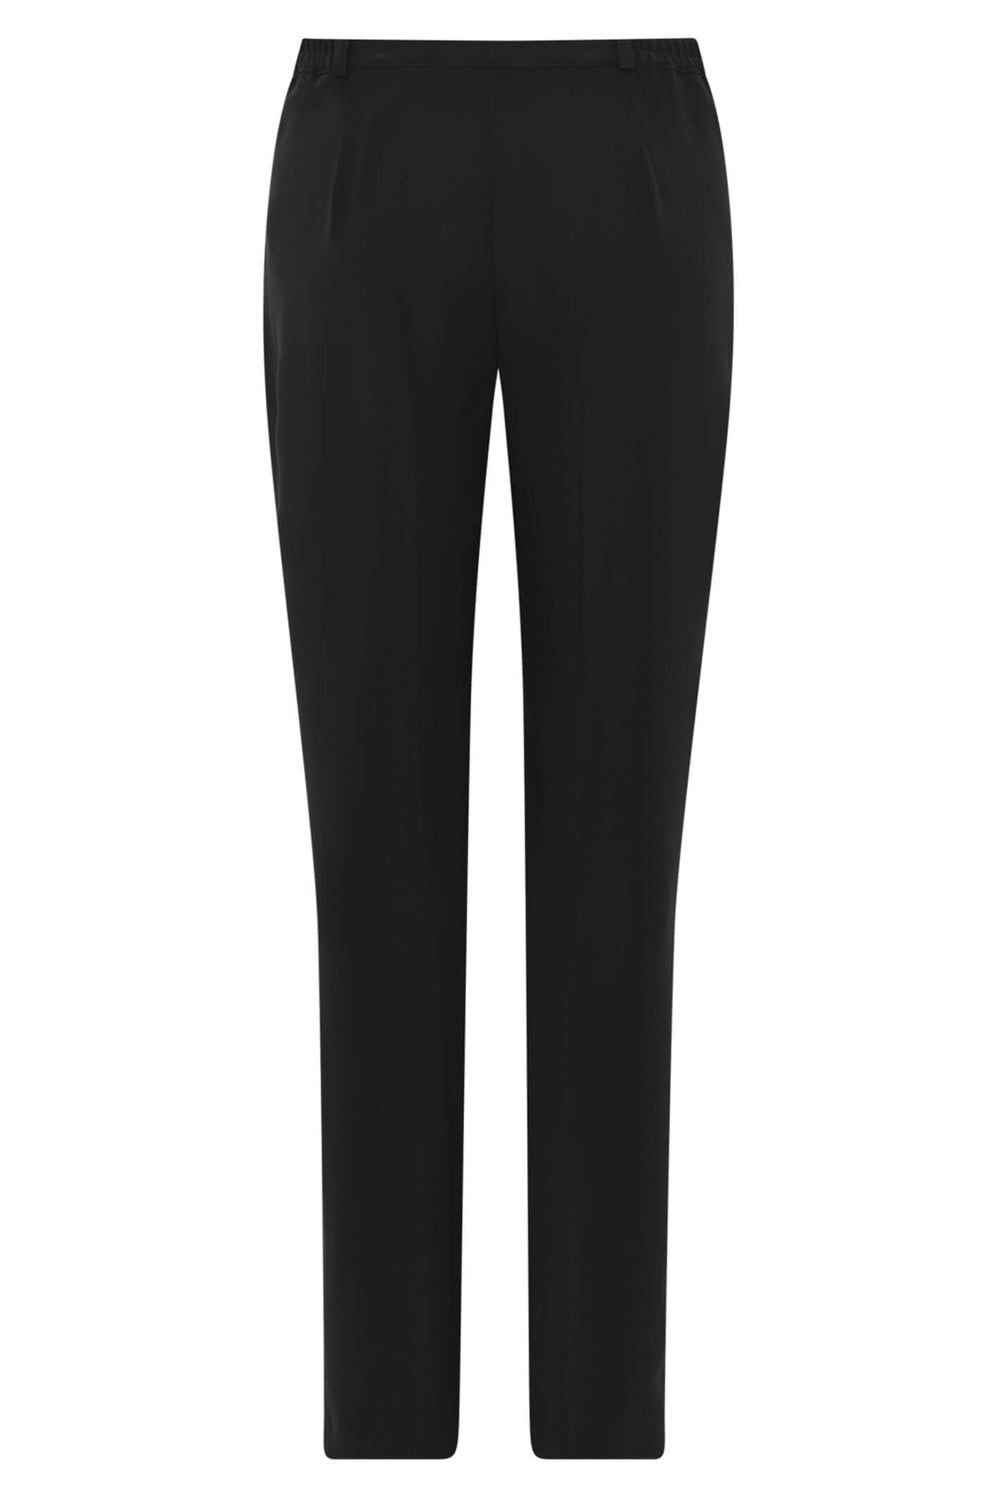 Habella 51156-5019-90 Black Trousers Reg 78 cm - Dotique